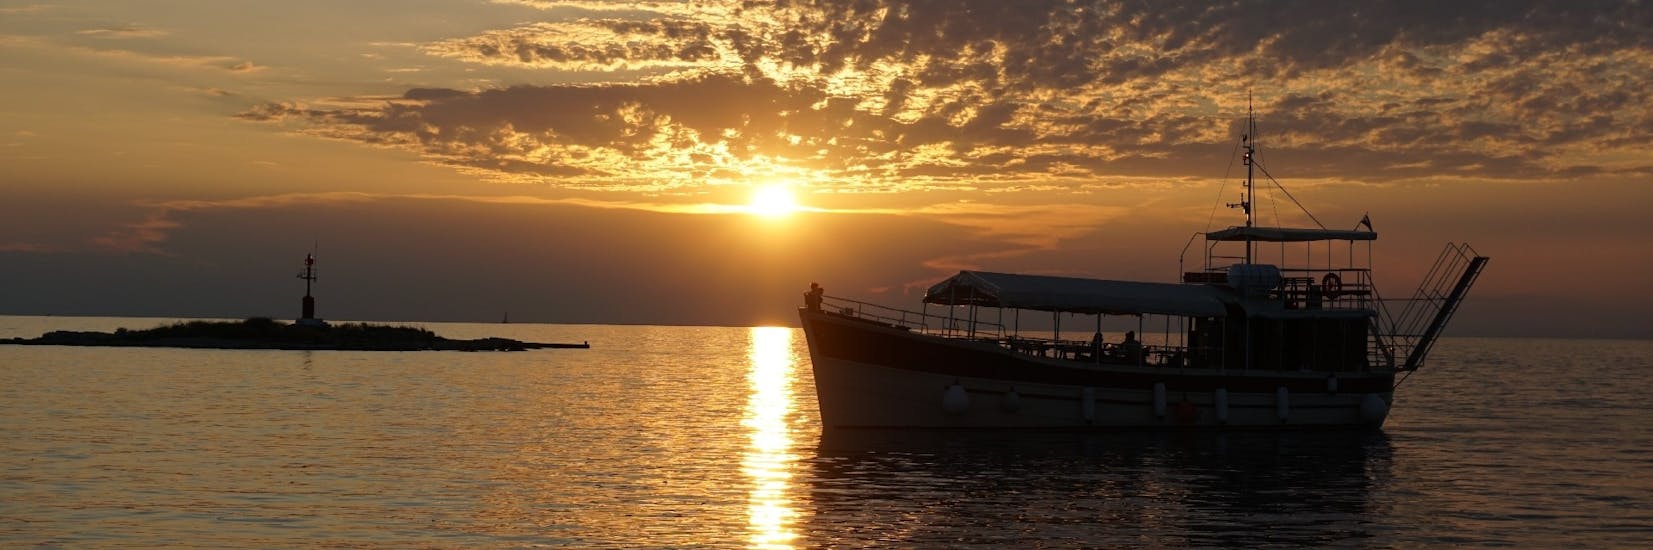 Gita in barca da Parenzo (Poreč) a Parenzo (Poreč) al tramonto e visita turistica.